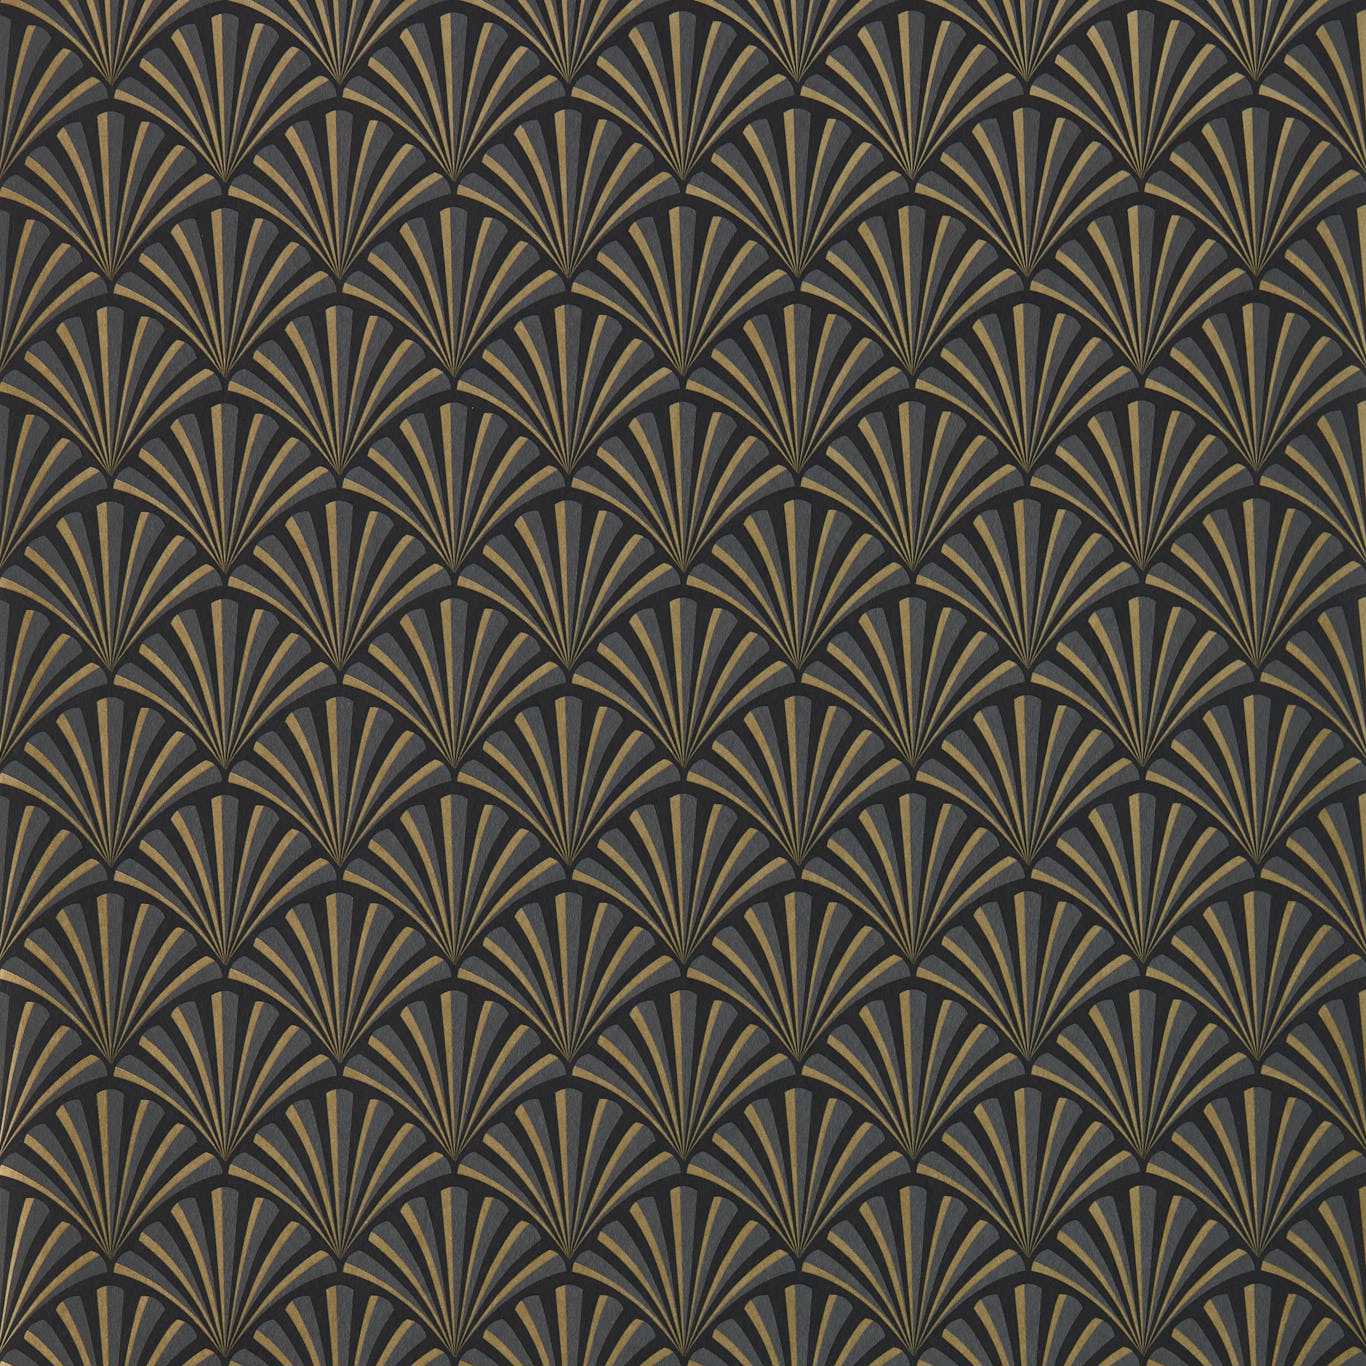 Chrysler Noir Wallpaper W0164/01 by Clarke & Clarke